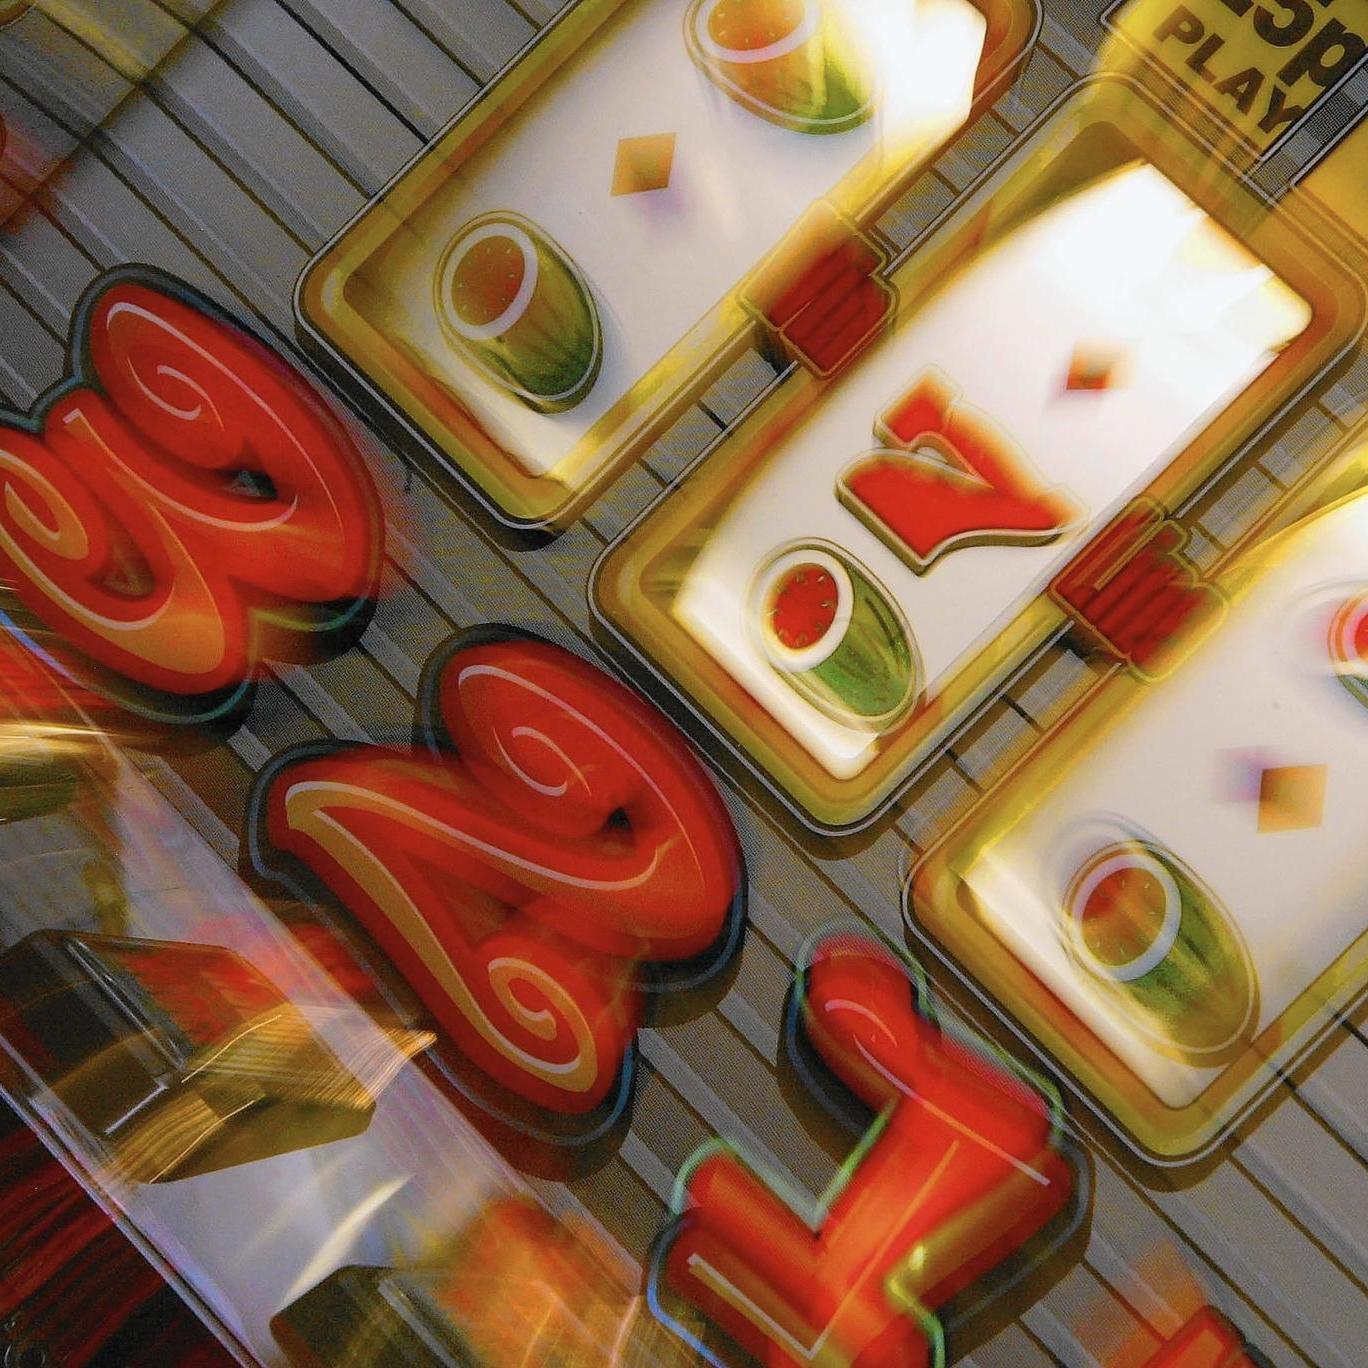 is online gambling legal in pennsylvania